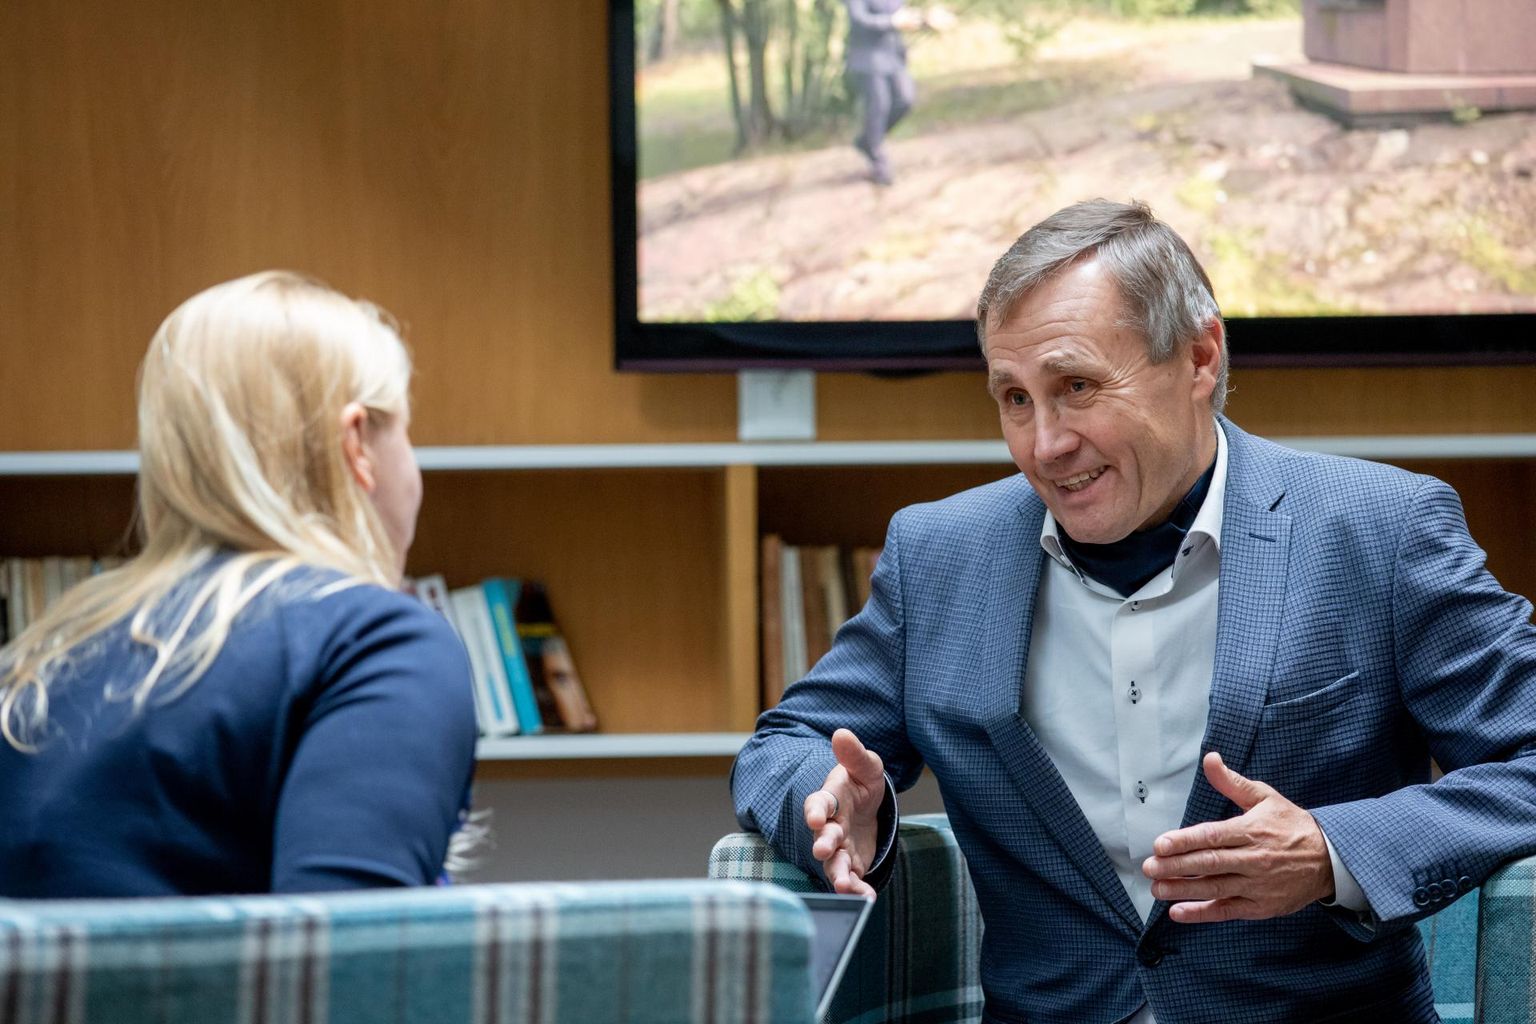 Haridus- ja teadusminister Tõnis Lukas külastas enne intervjuud Pärnu Tammsaare kooli, mis jättis talle väga positiivse mulje.